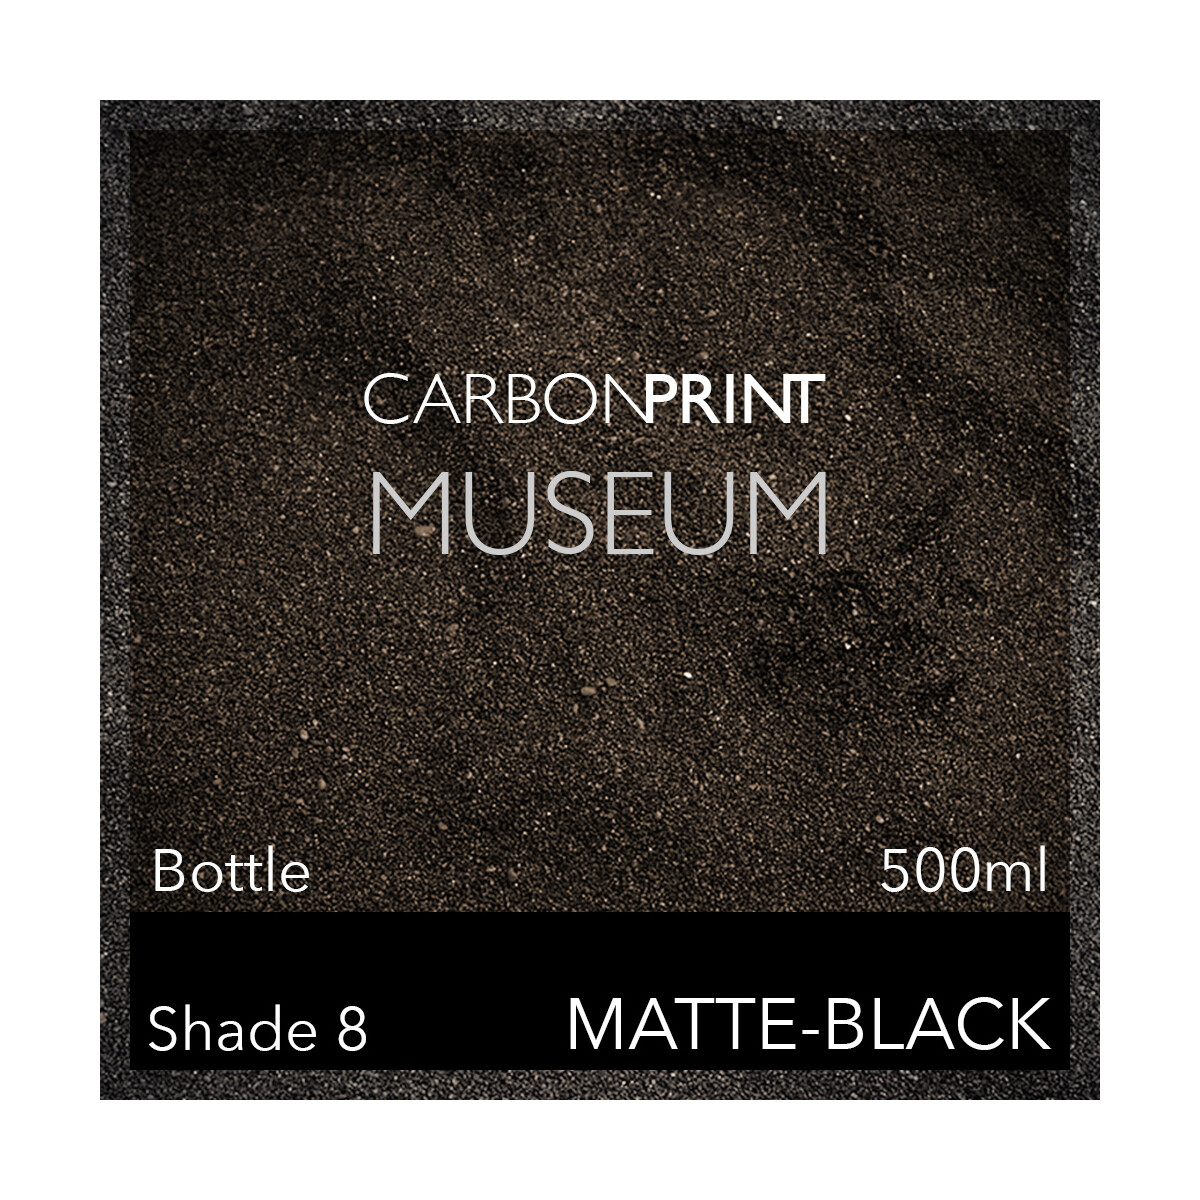 Carbonprint Museum Bottle Position K 500ml